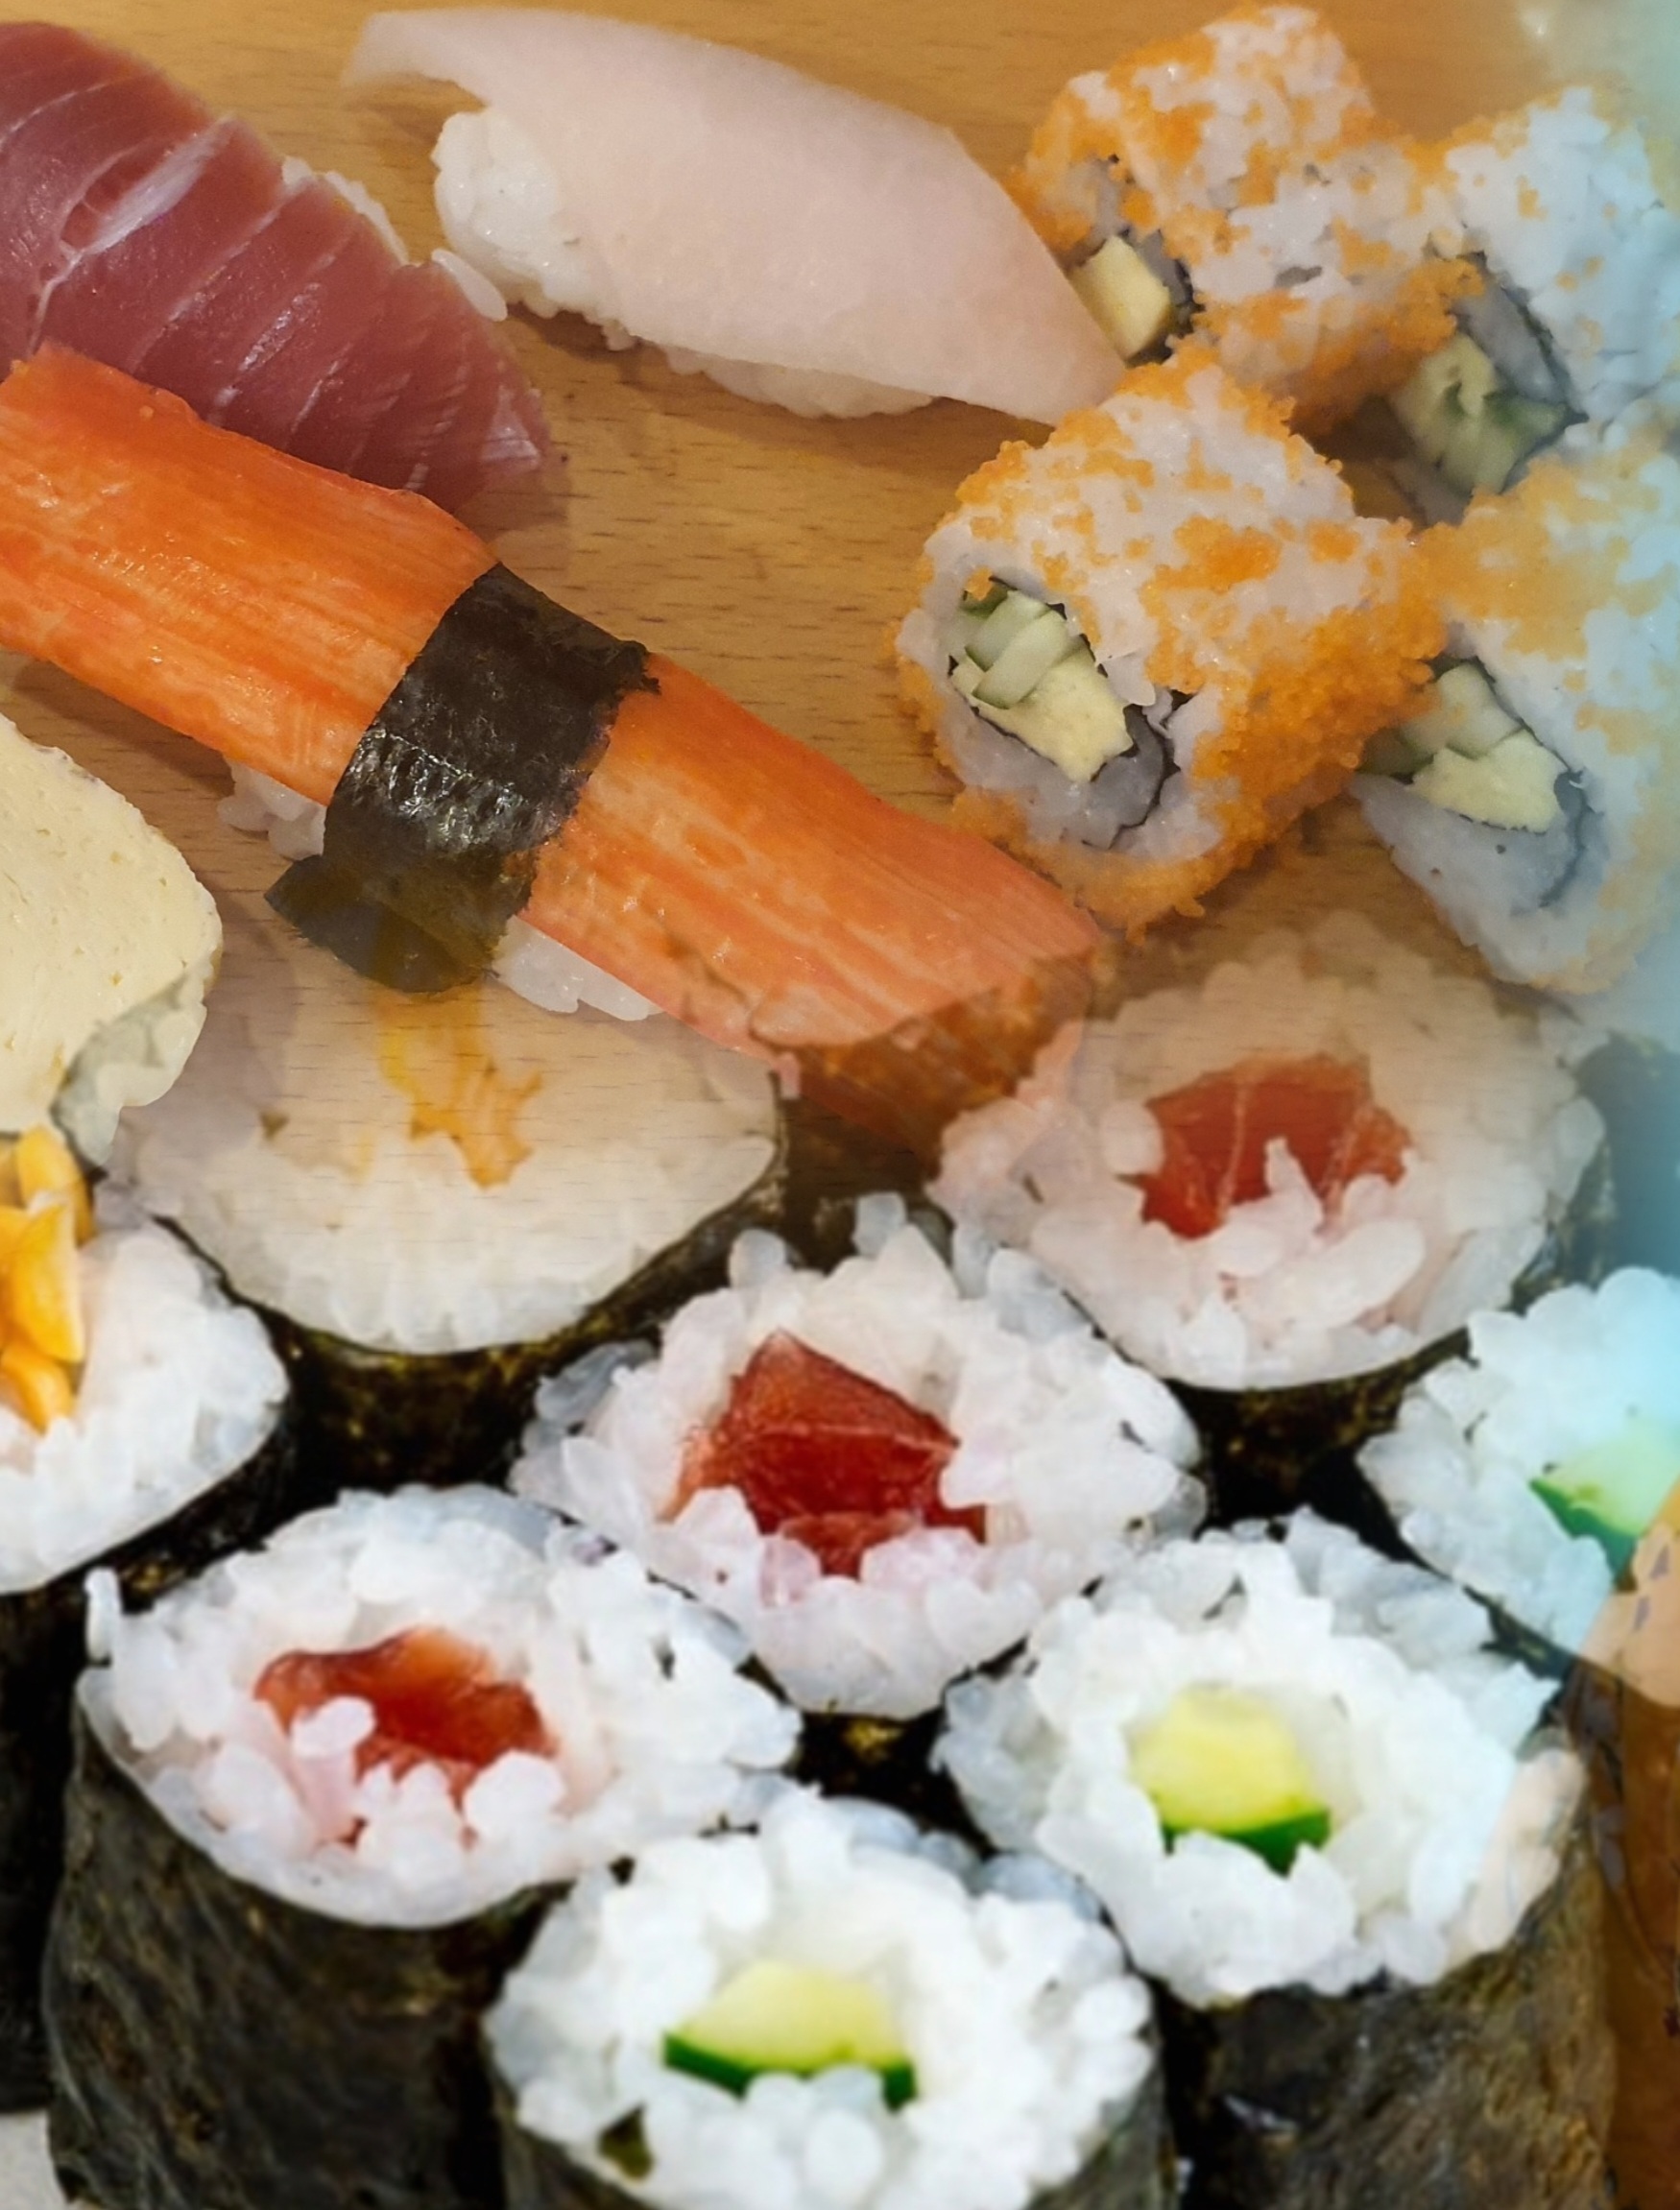 View - Sushi để qua đêm bán cho học sinh: Rất đáng báo động | Báo Dân trí